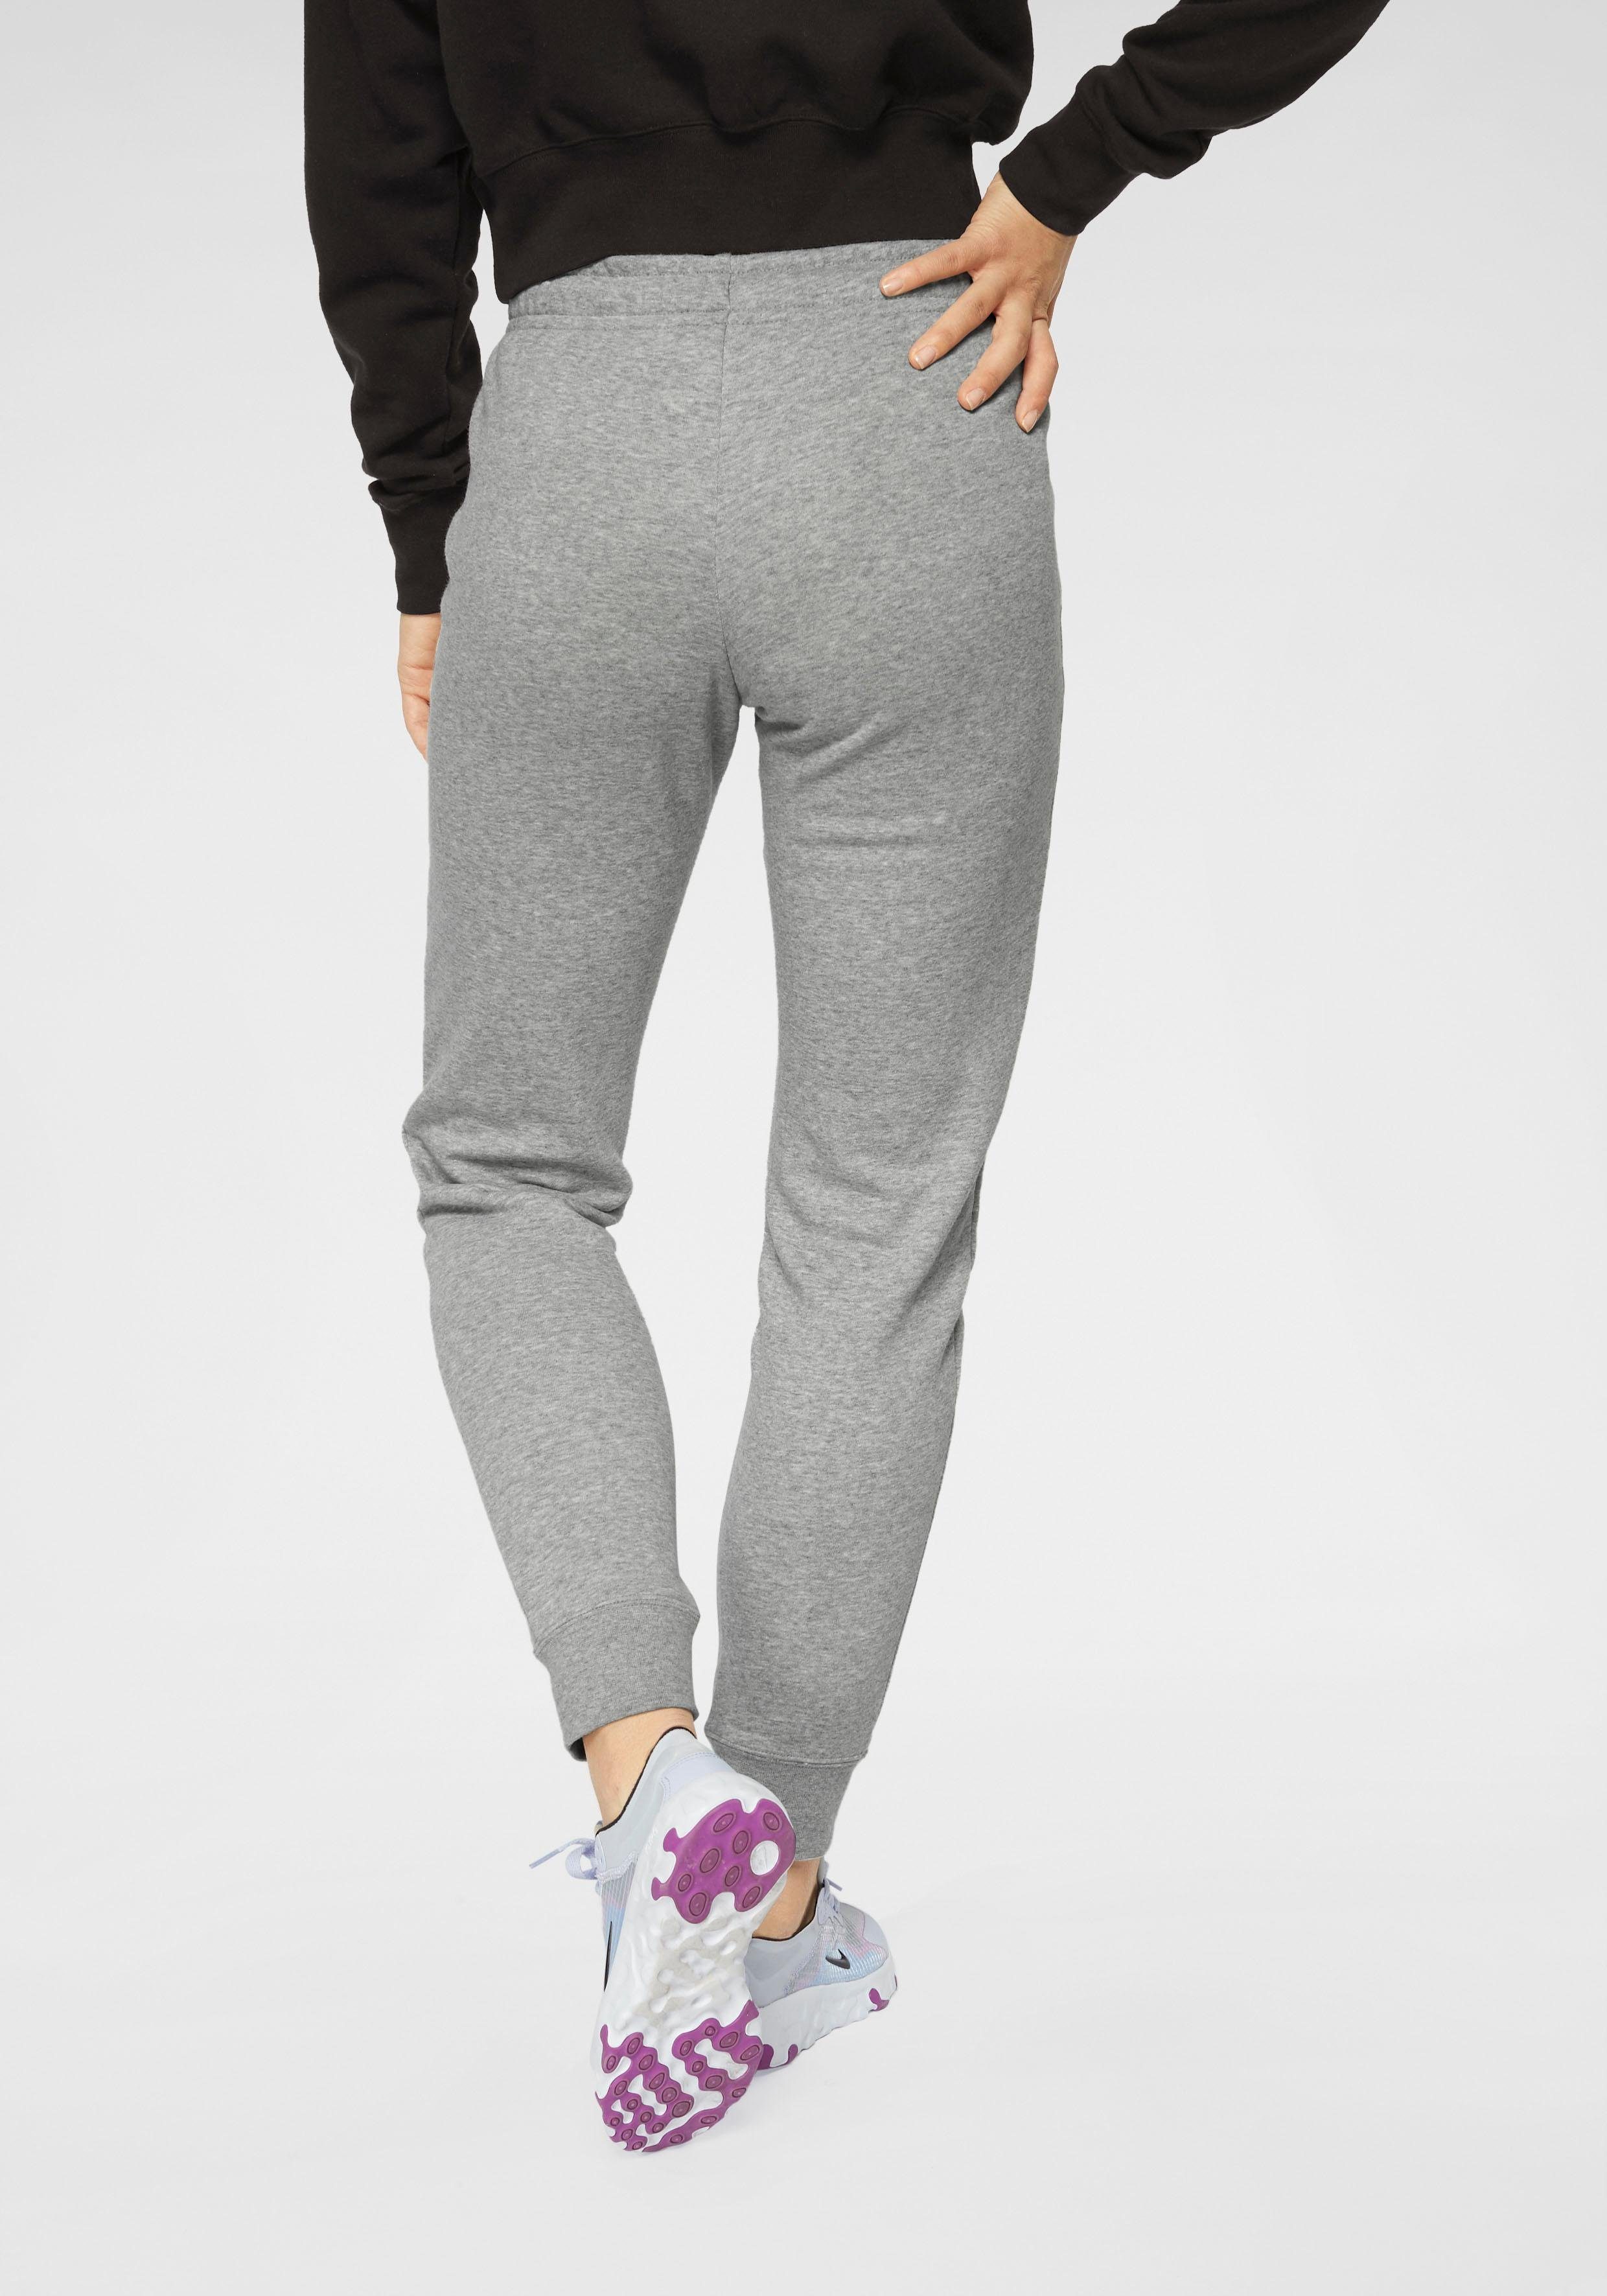 MID-RISE Nike hellgrau-meliert PANT Jogginghose Sportswear FLEECE WOMENS ESSENTIAL